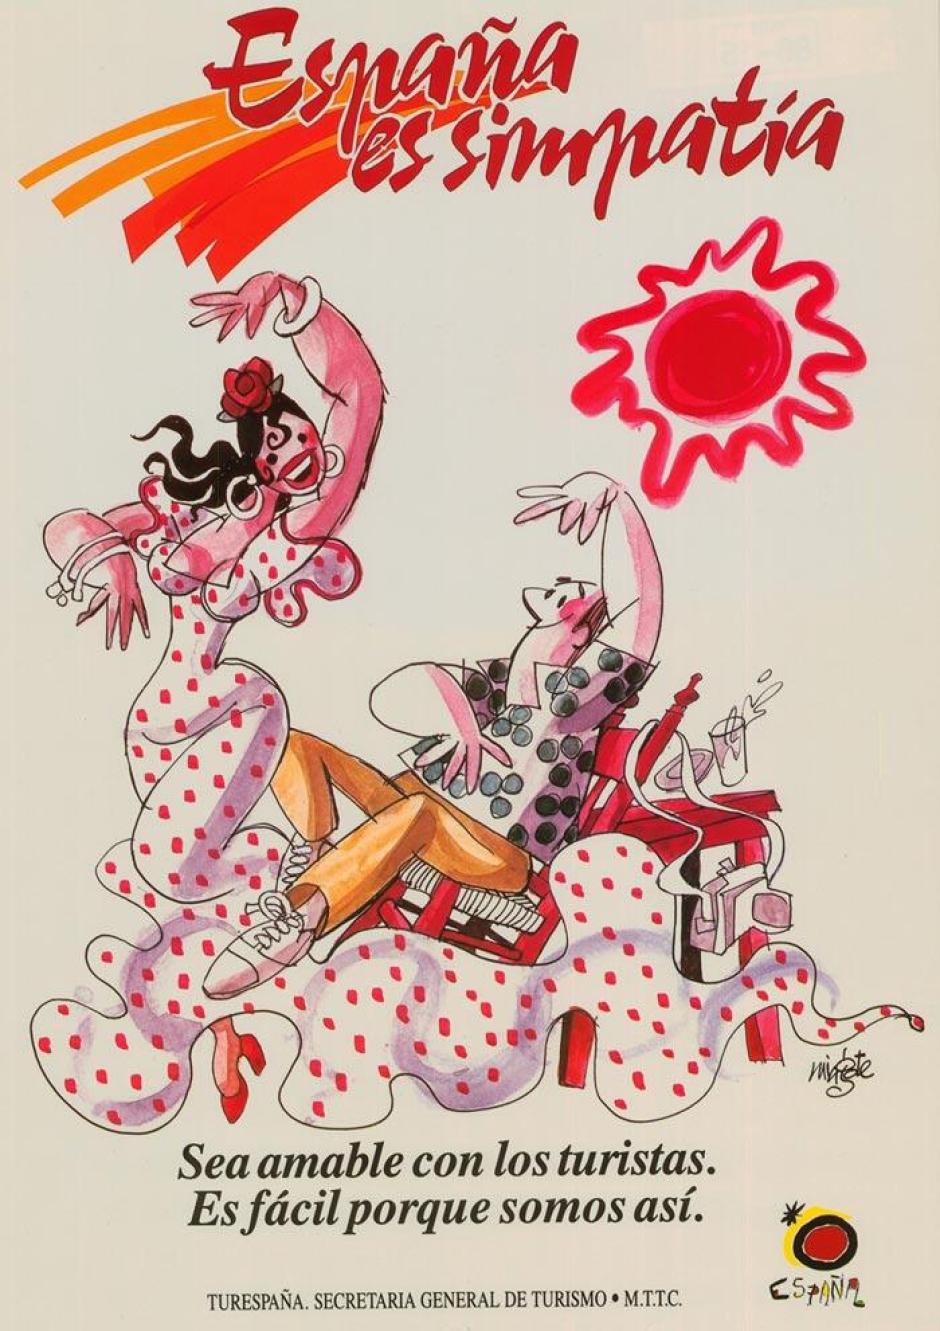 Cartel publicitario de la Secretaría General de Turismo de España de 1988